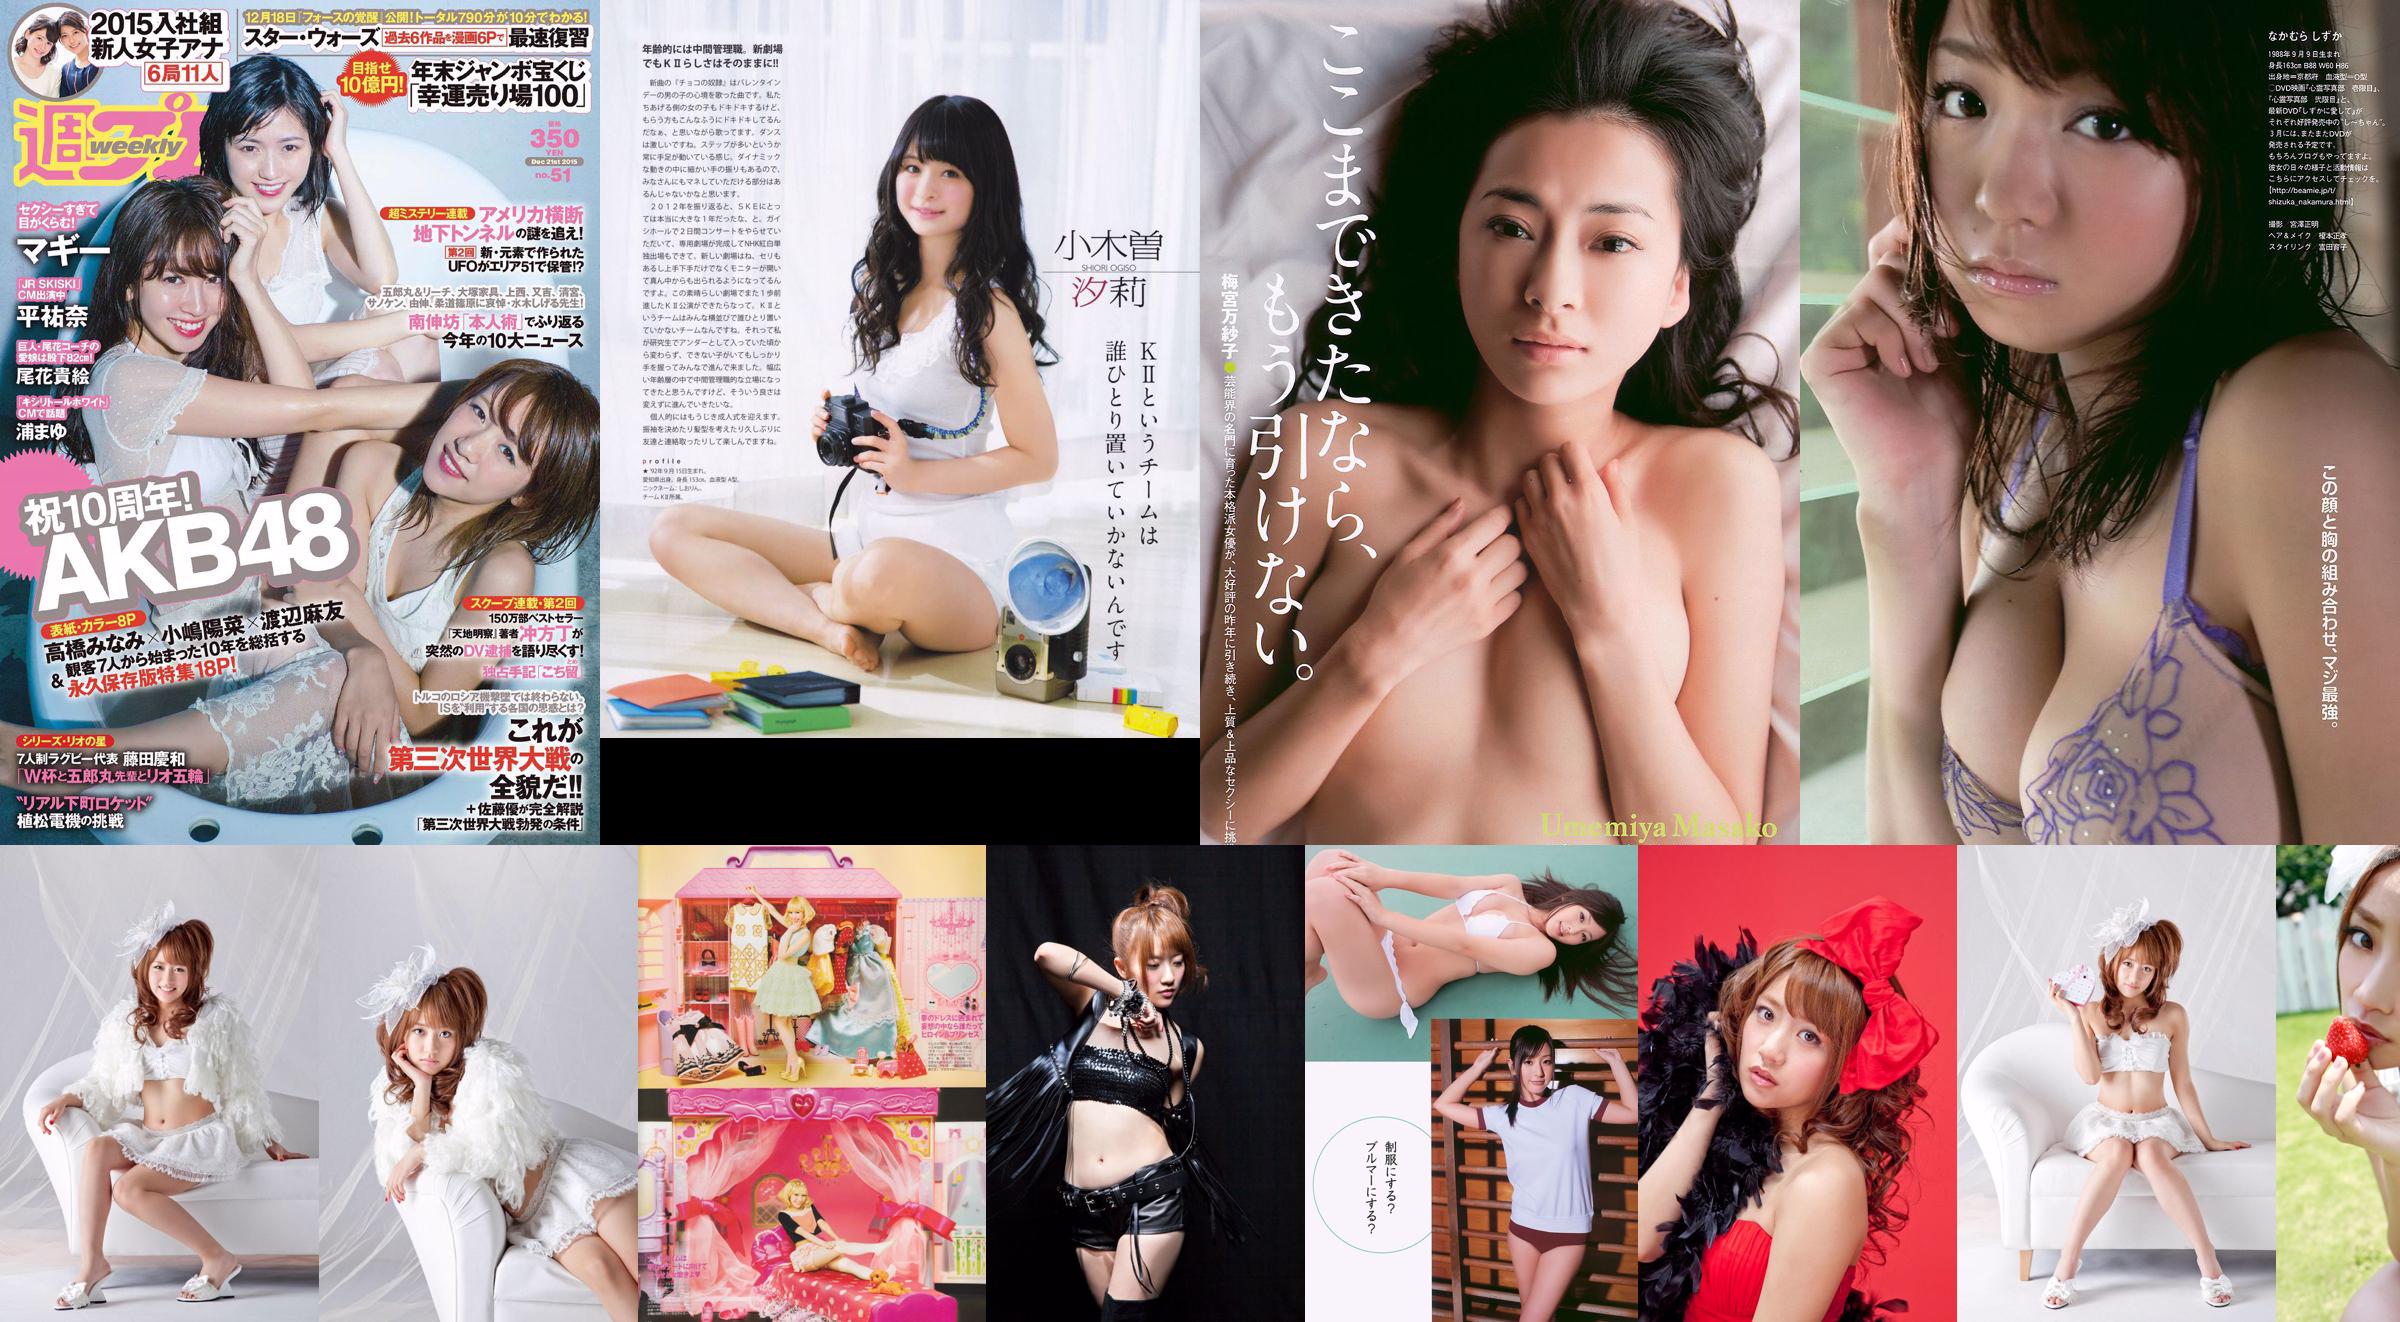 [Bomb Magazine] 2013 No.02 Takahashi Minami Matsui Jurina Kasai Tomomi Kitahara Riehi Photo magazine No.26bc59 Pagina 2